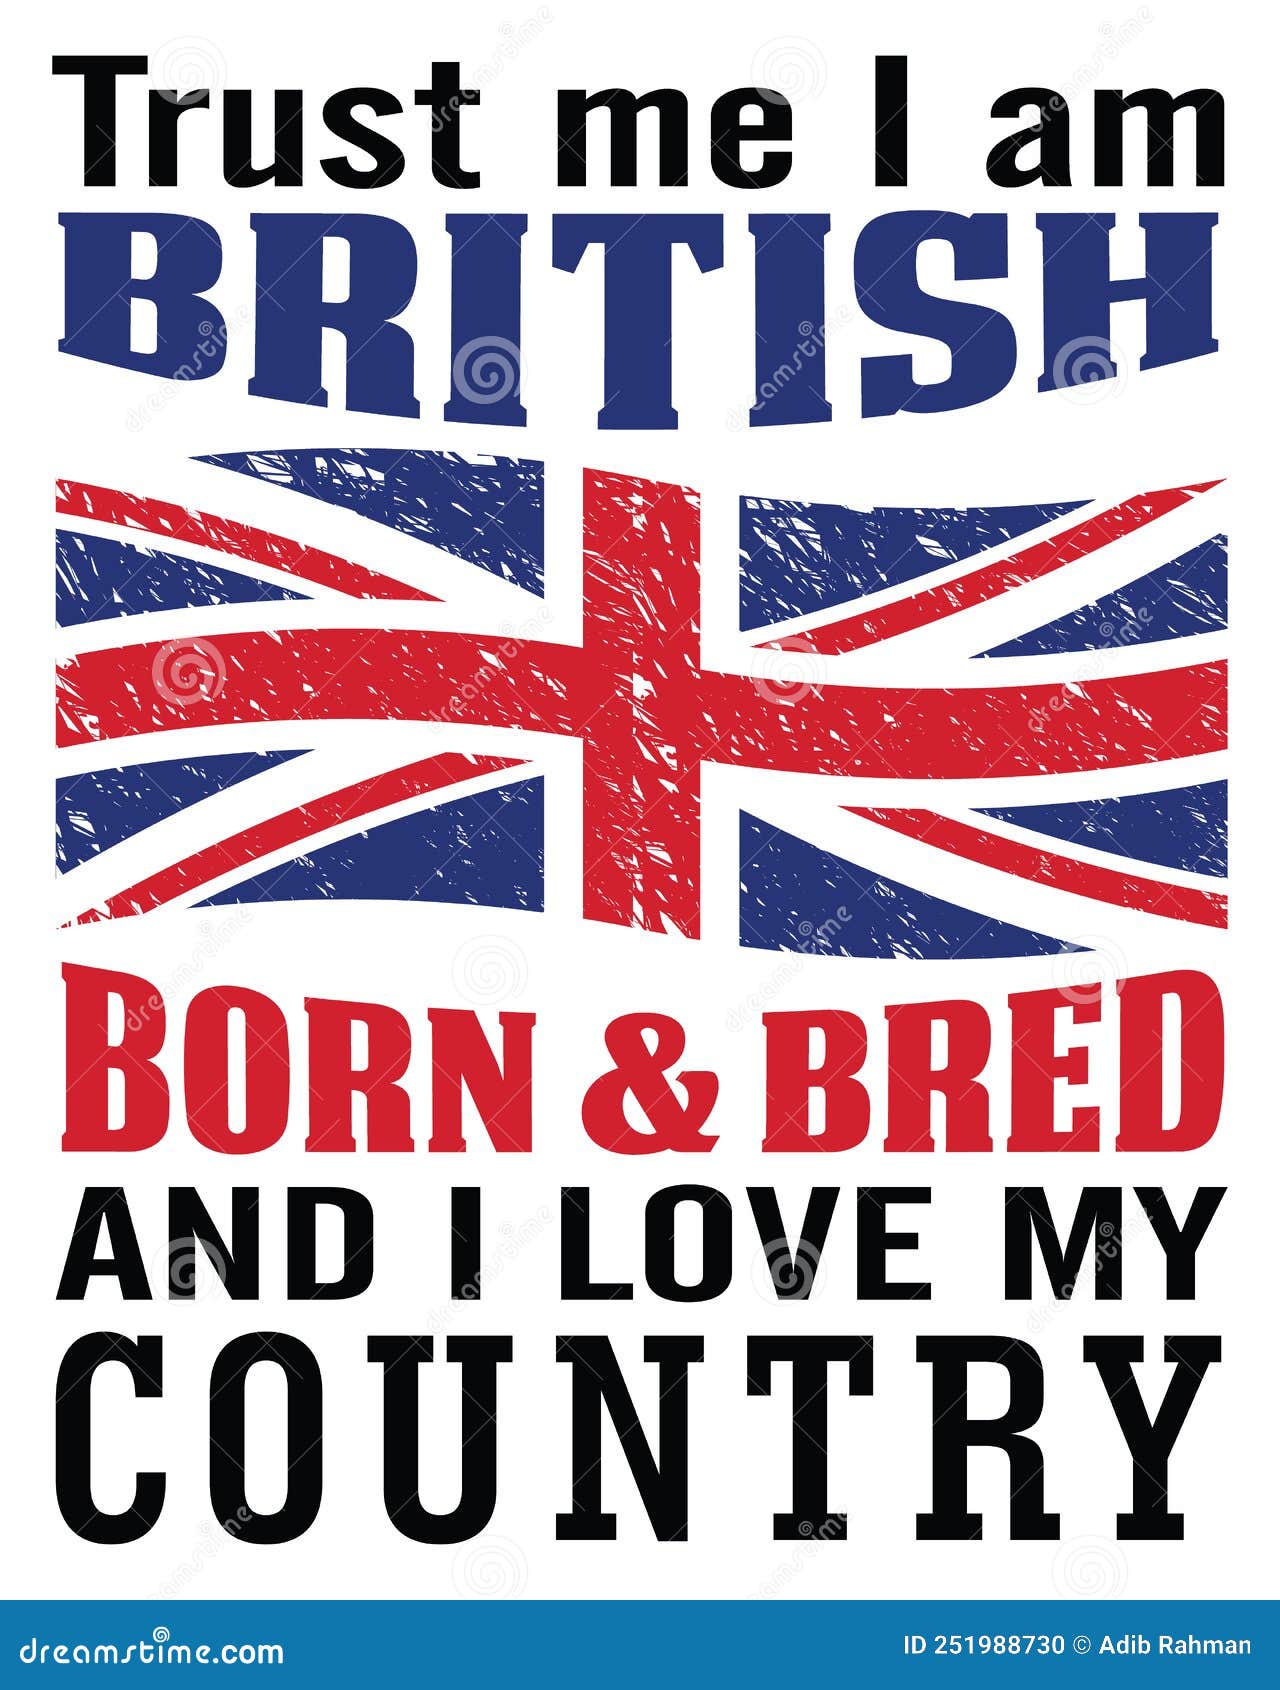 Born in britain